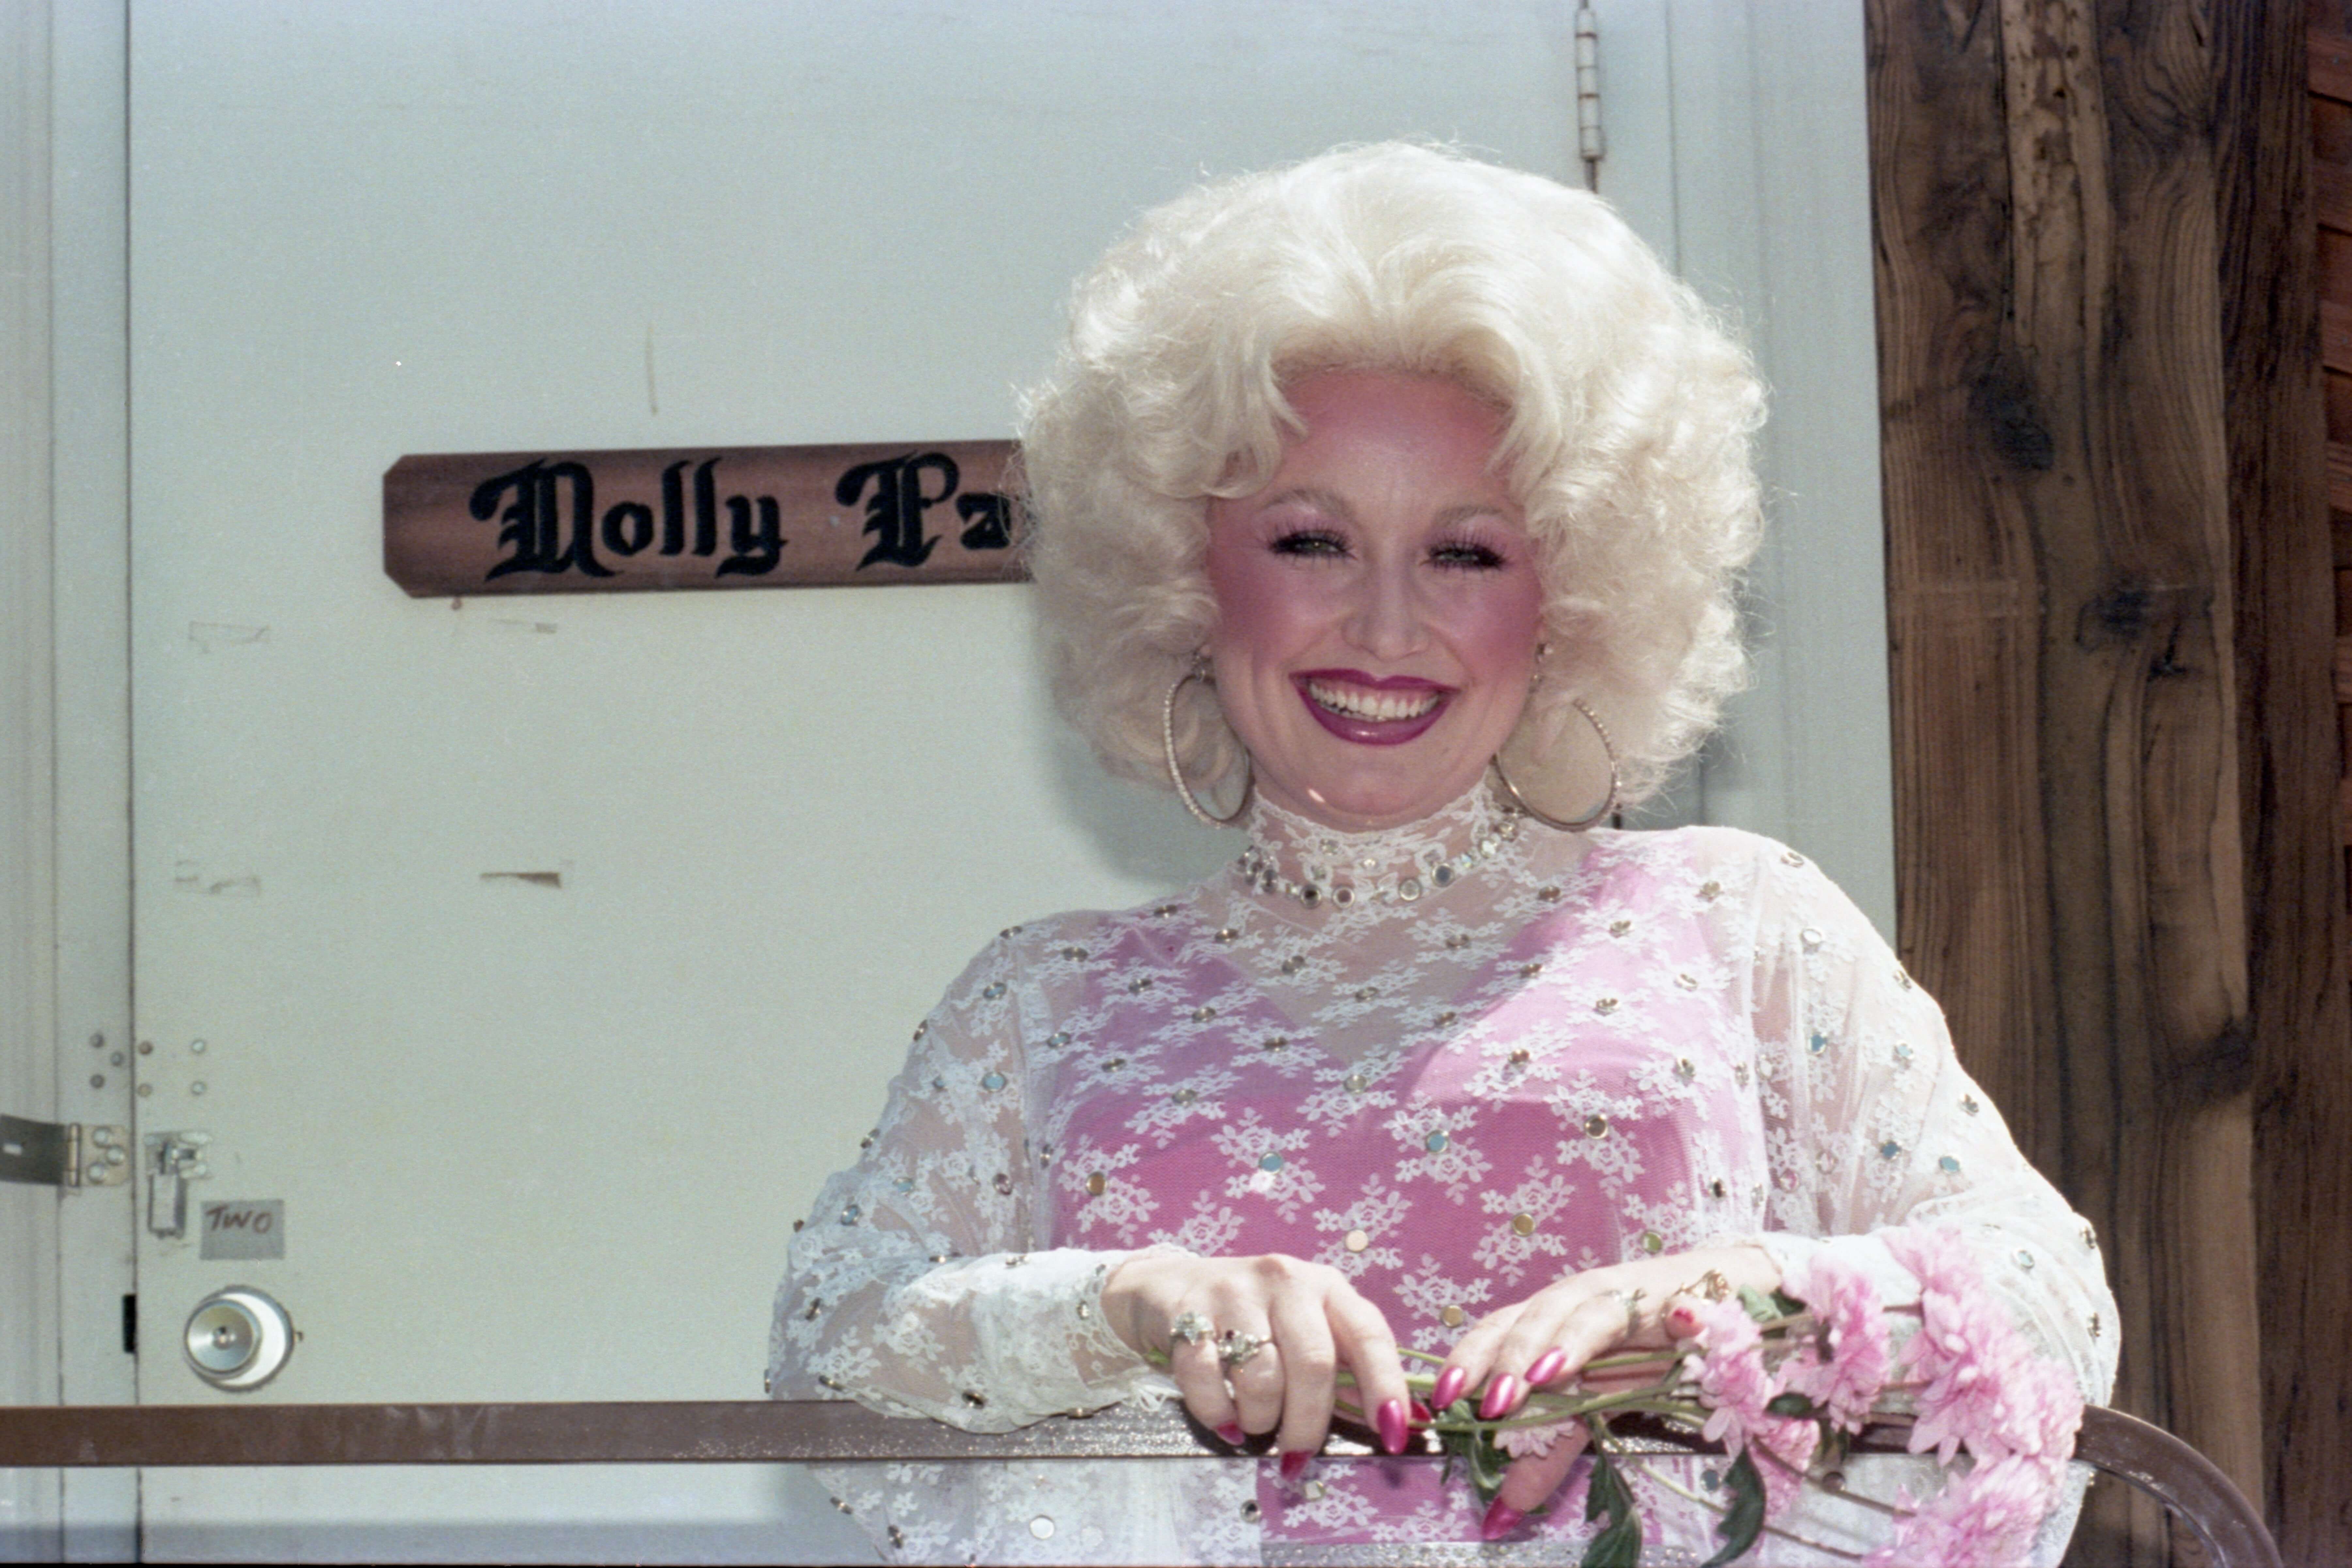 Tại sao Dolly Parton lại quan tâm đến việc trang điểm khi lớn lên, mặc dù nó bị cấm